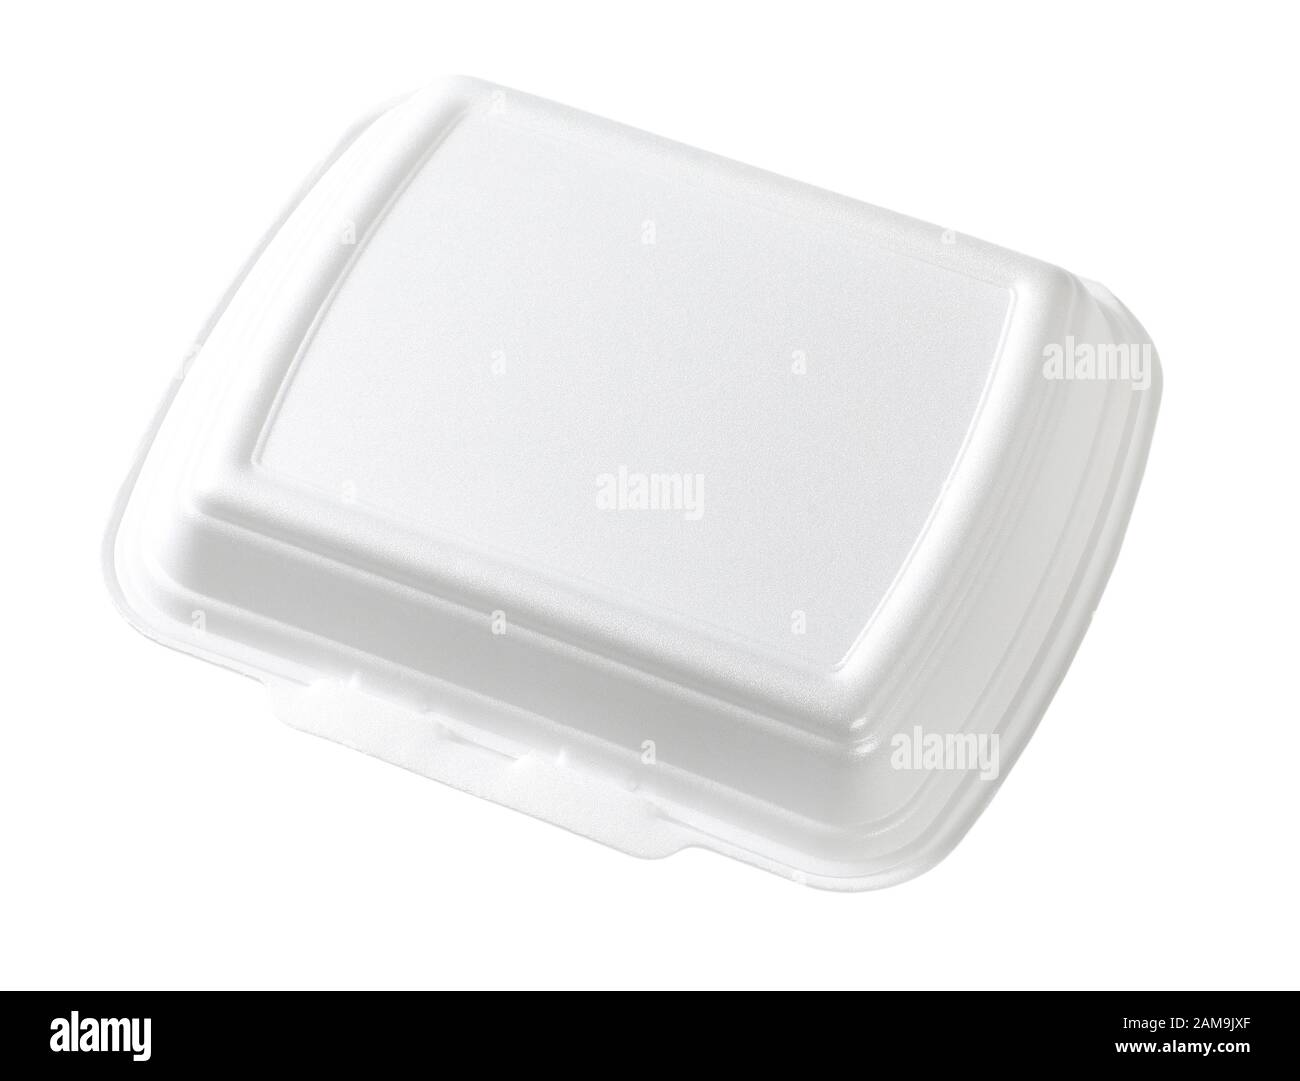 La caja de comida rápida de poliestireno blanco sobre fondo blanco. Foto de stock